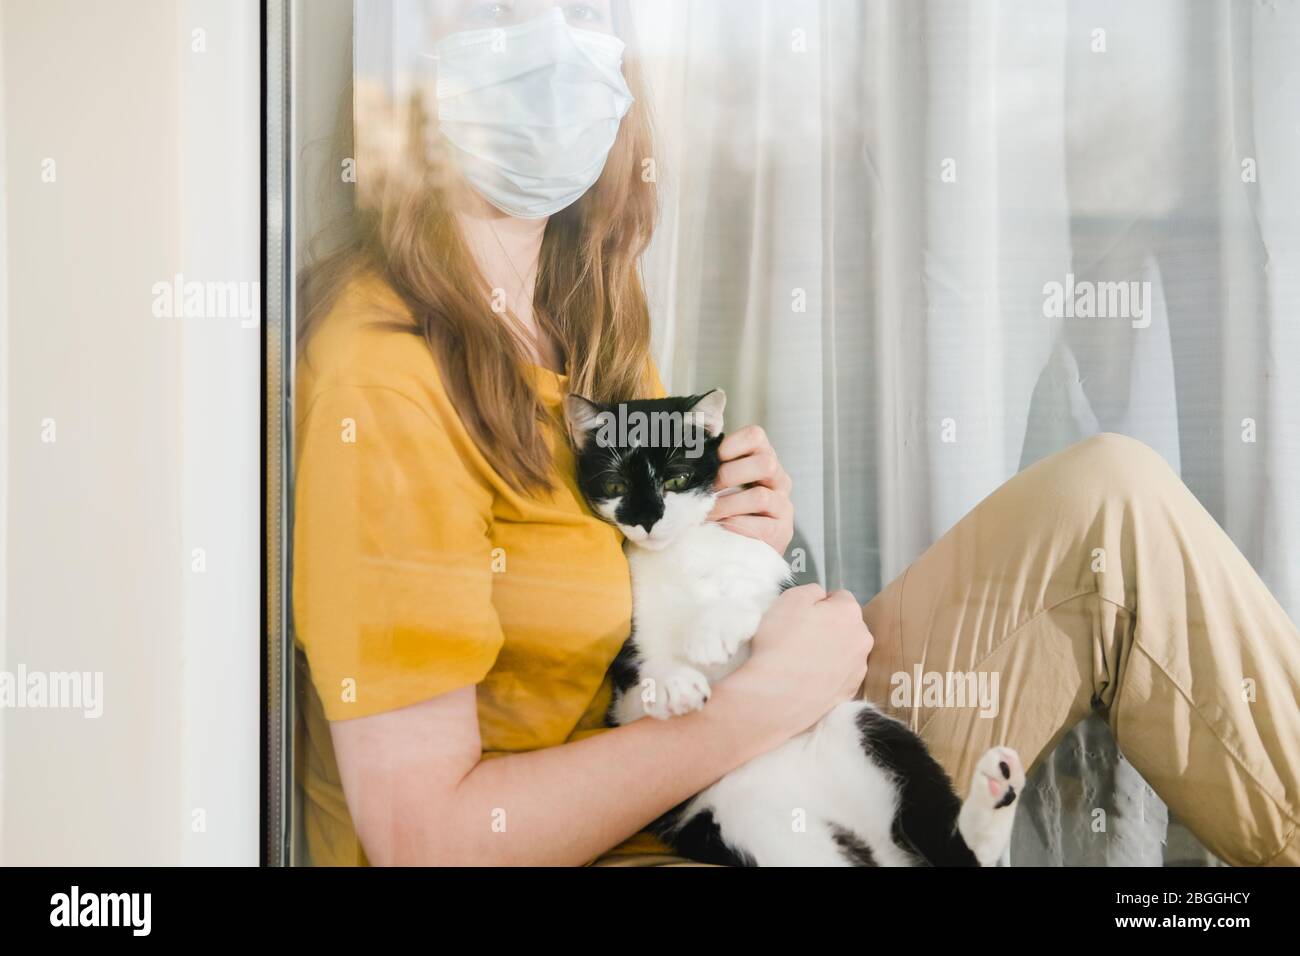 Triste ragazza in maschera medica protettiva e maglietta gialla seduta sul davanzale con un gatto Tuxedo nero e bianco durante una corona di quarantena pandemica Foto Stock